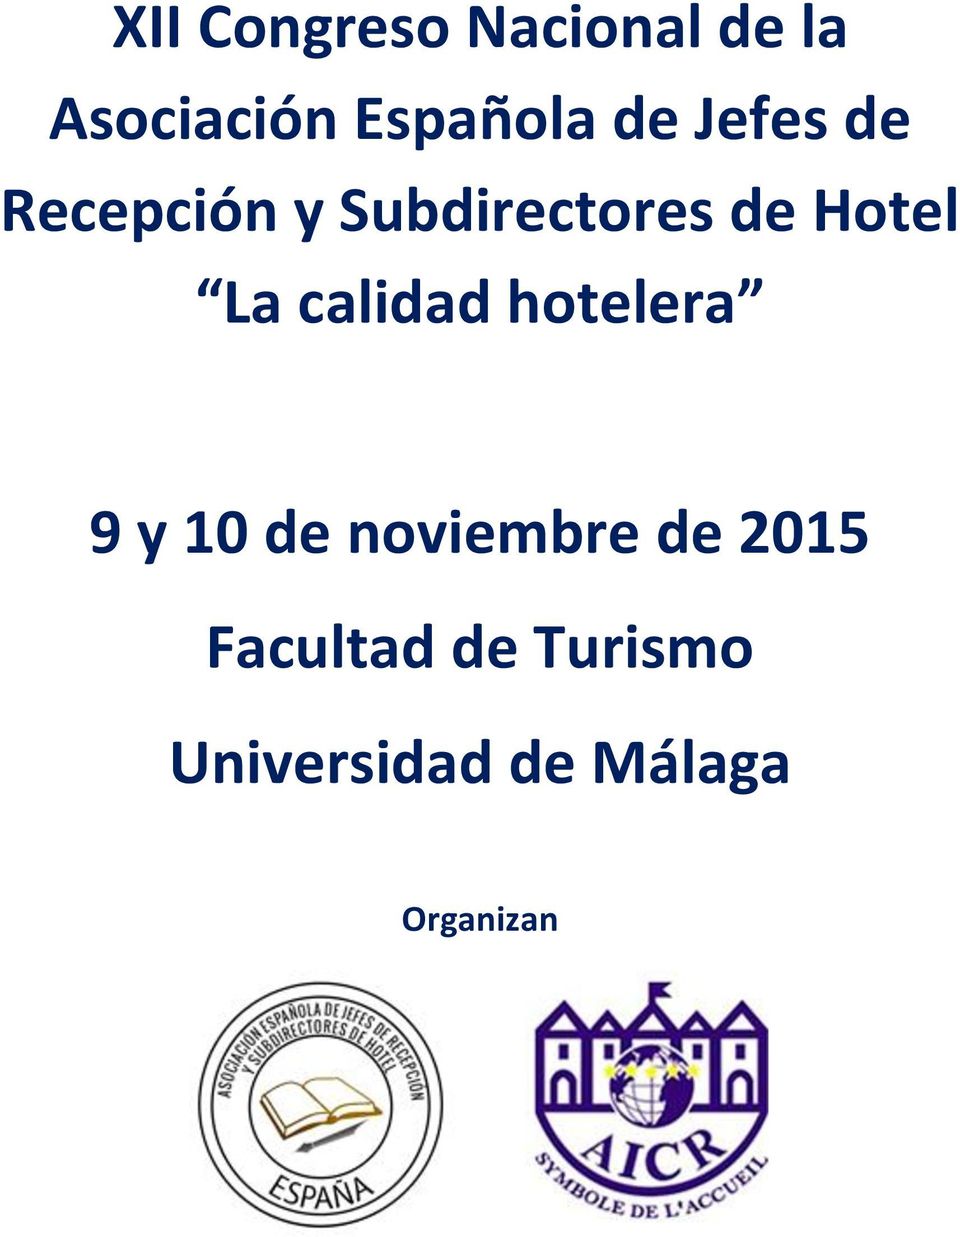 La calidad hotelera 9 y 10 de noviembre de 2015